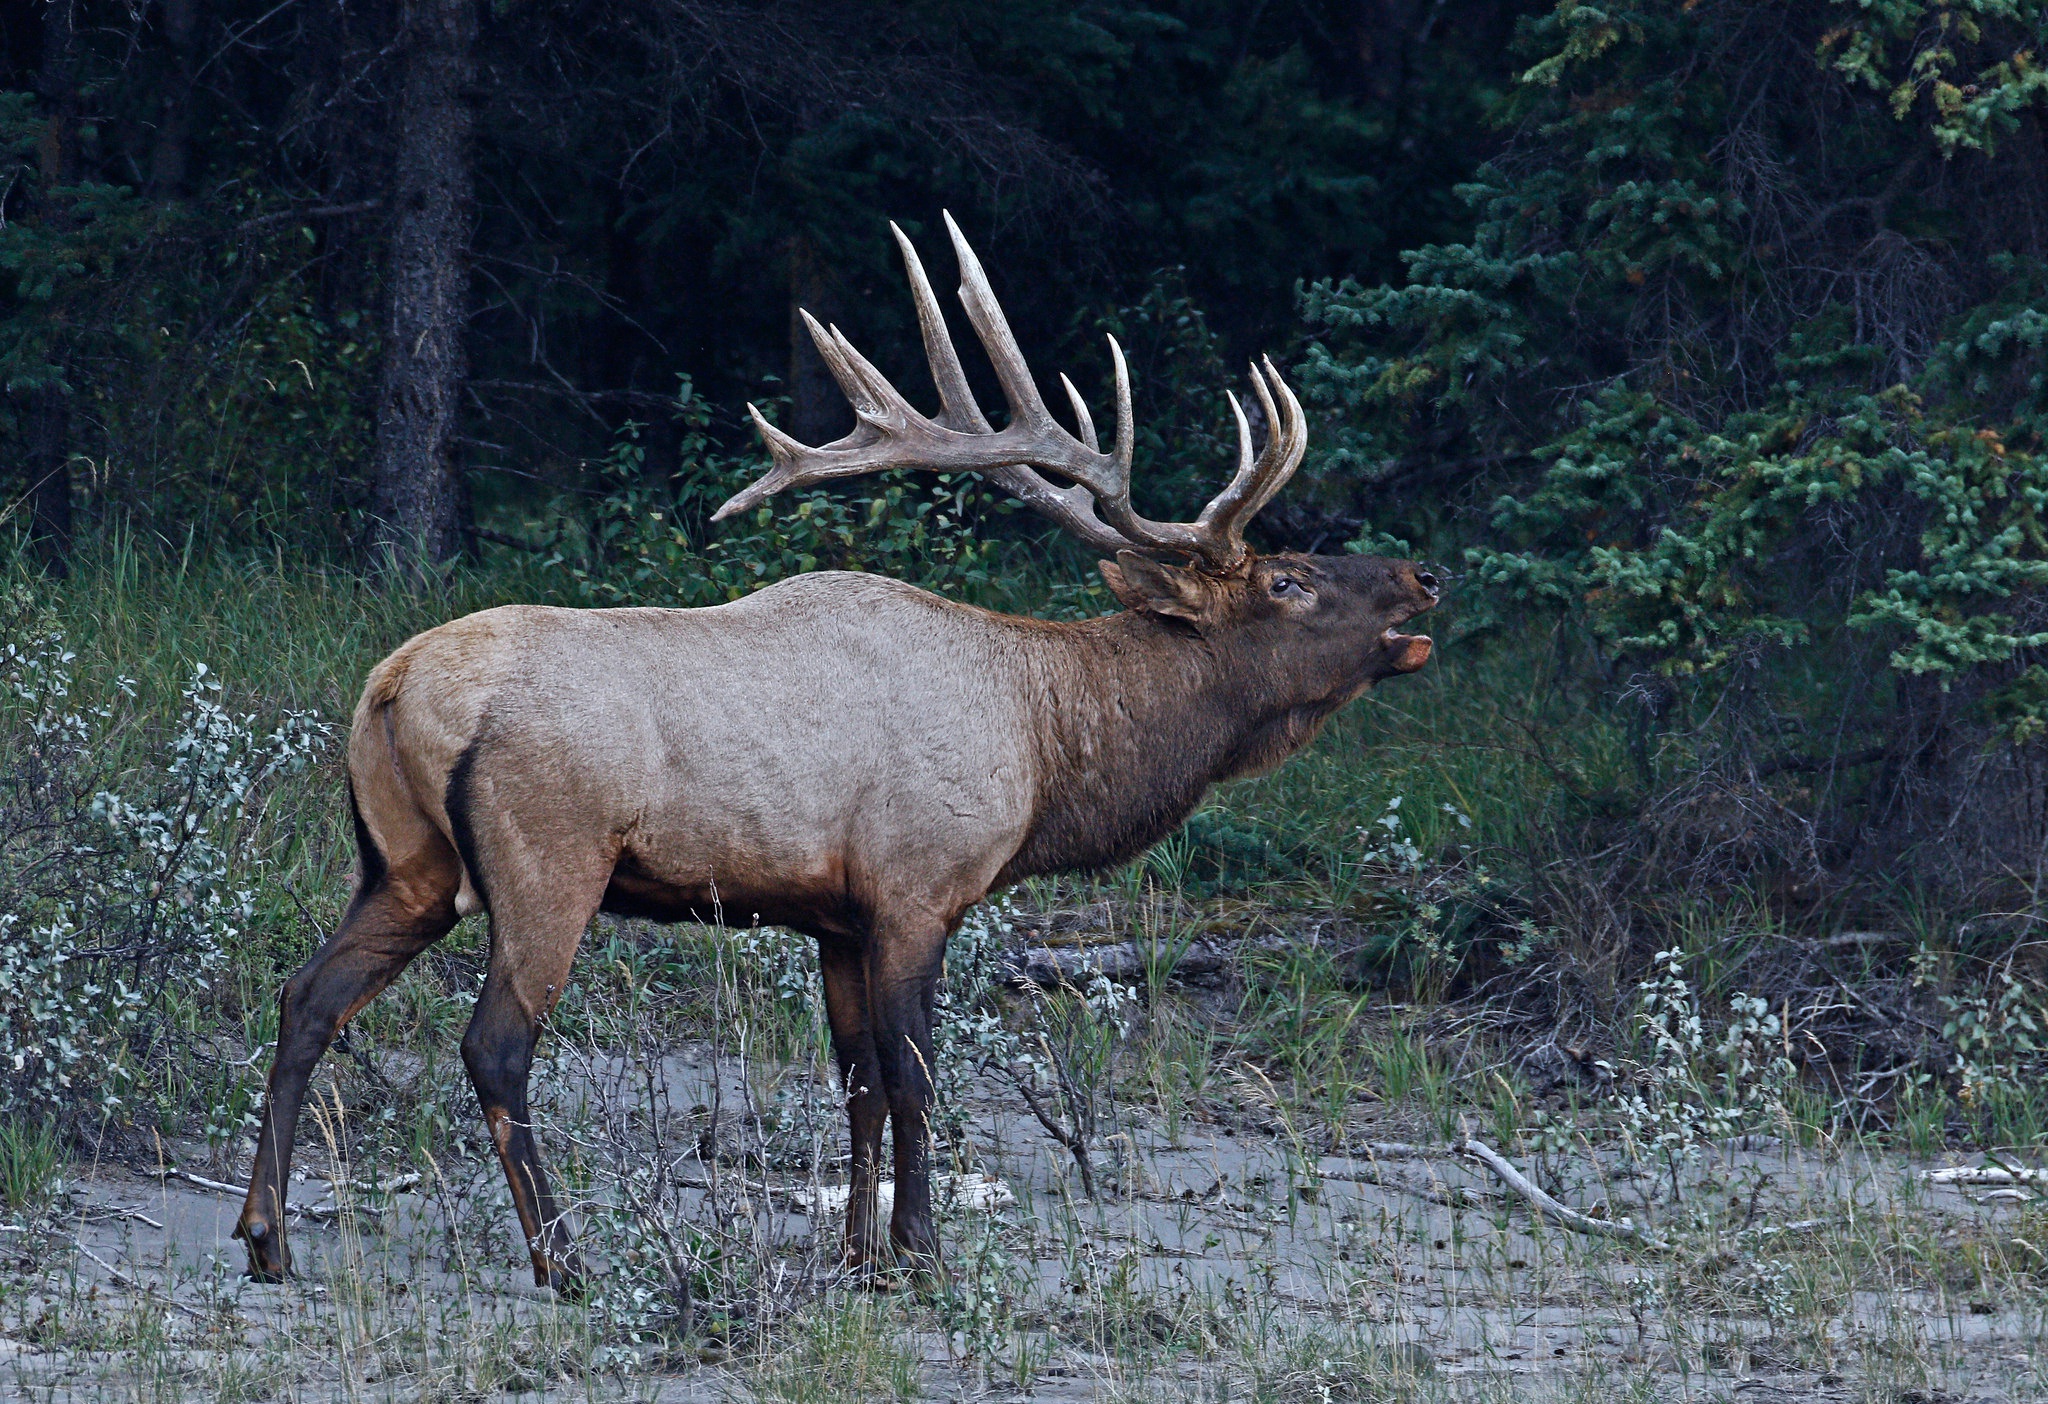 General 2048x1404 mammals animals elk